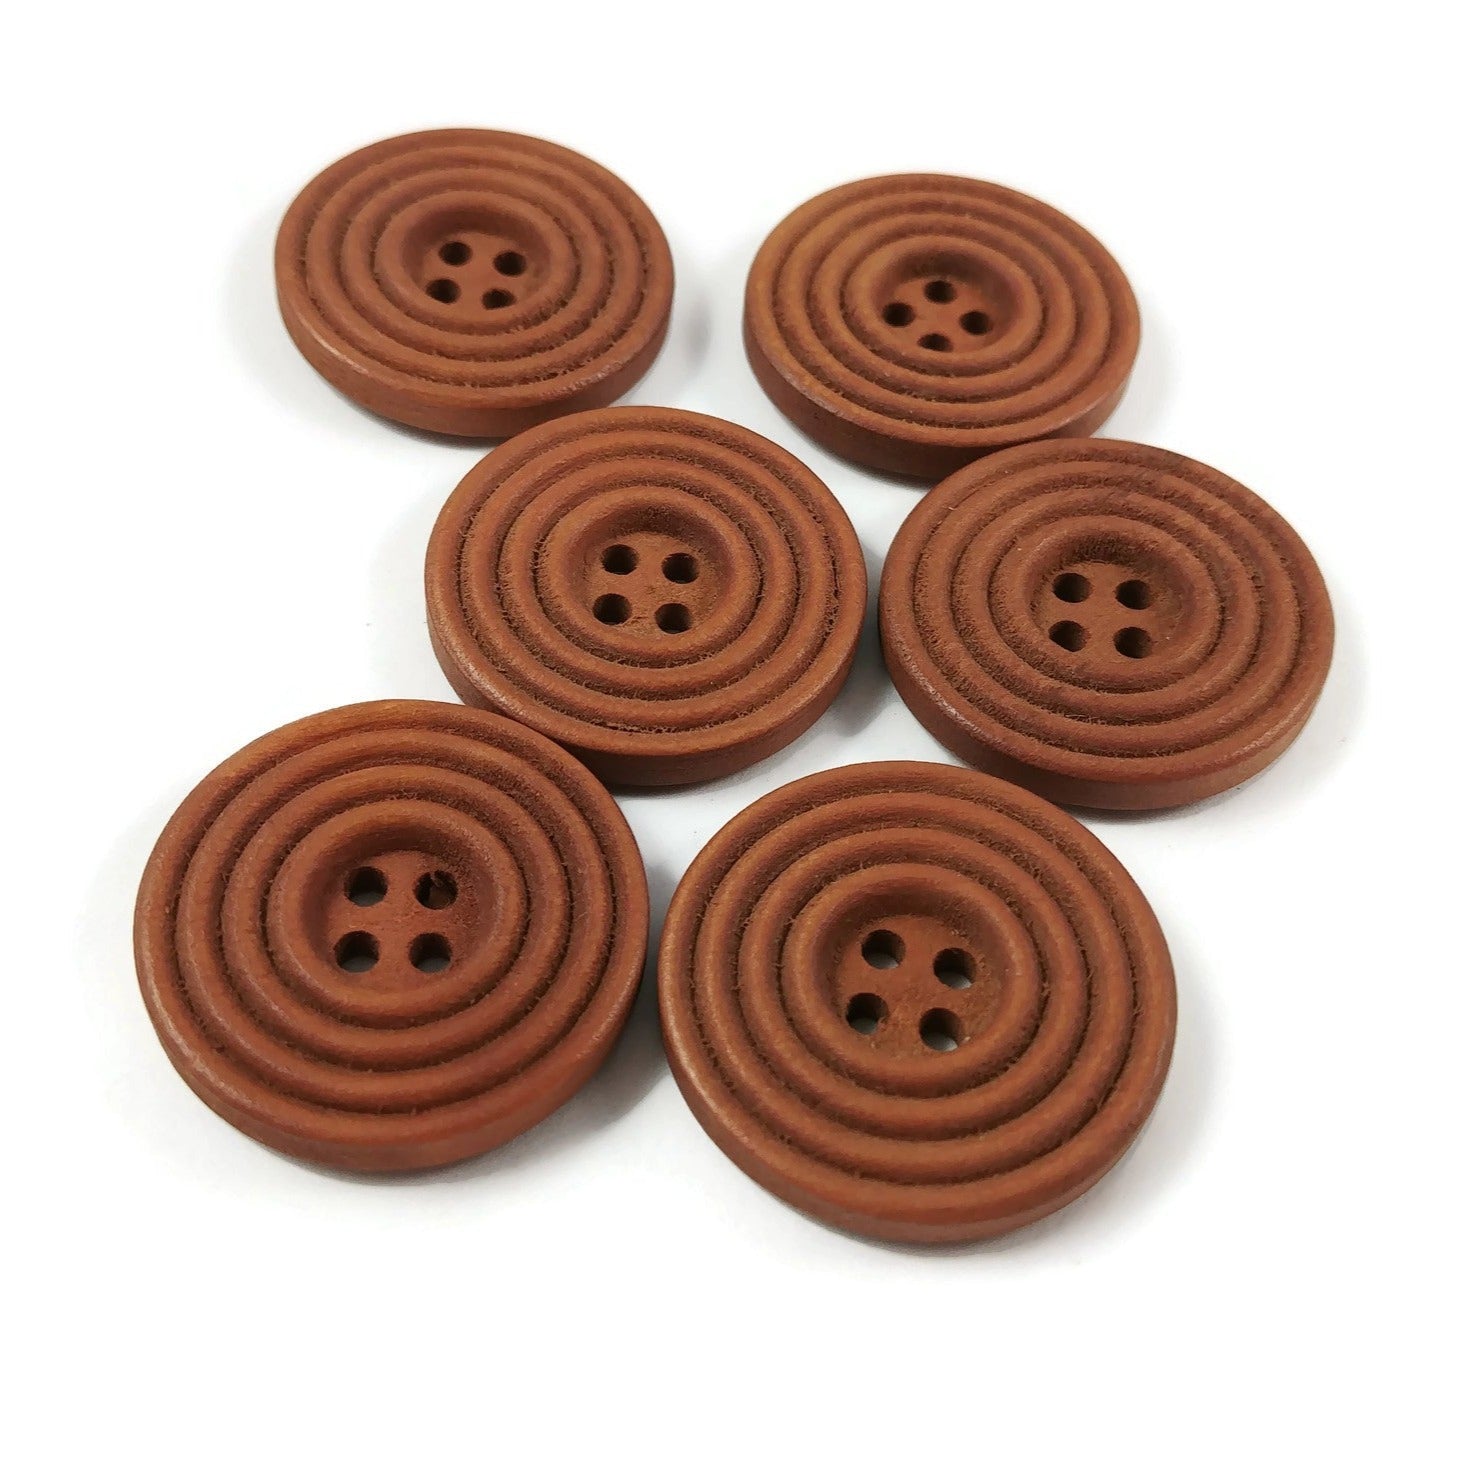 Bouton de bois de 25mm - ensemble de 6 boutons en bois naturel avec cercles